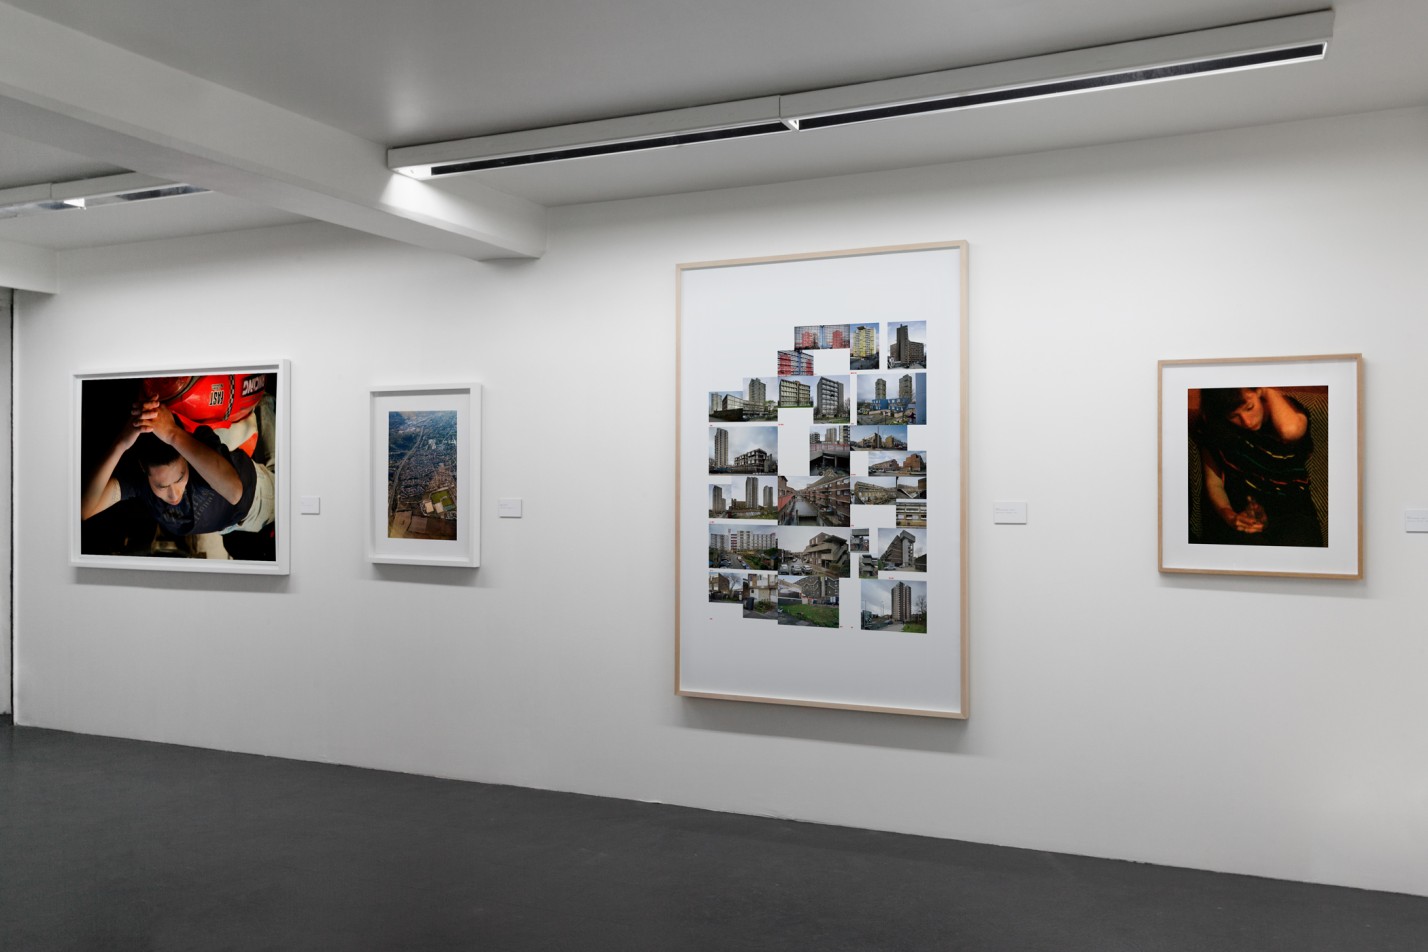 Camille Fallet - Documents 2007-2014 - *Documents 2007-2014*, 
galerie cour carrée, Paris 2013